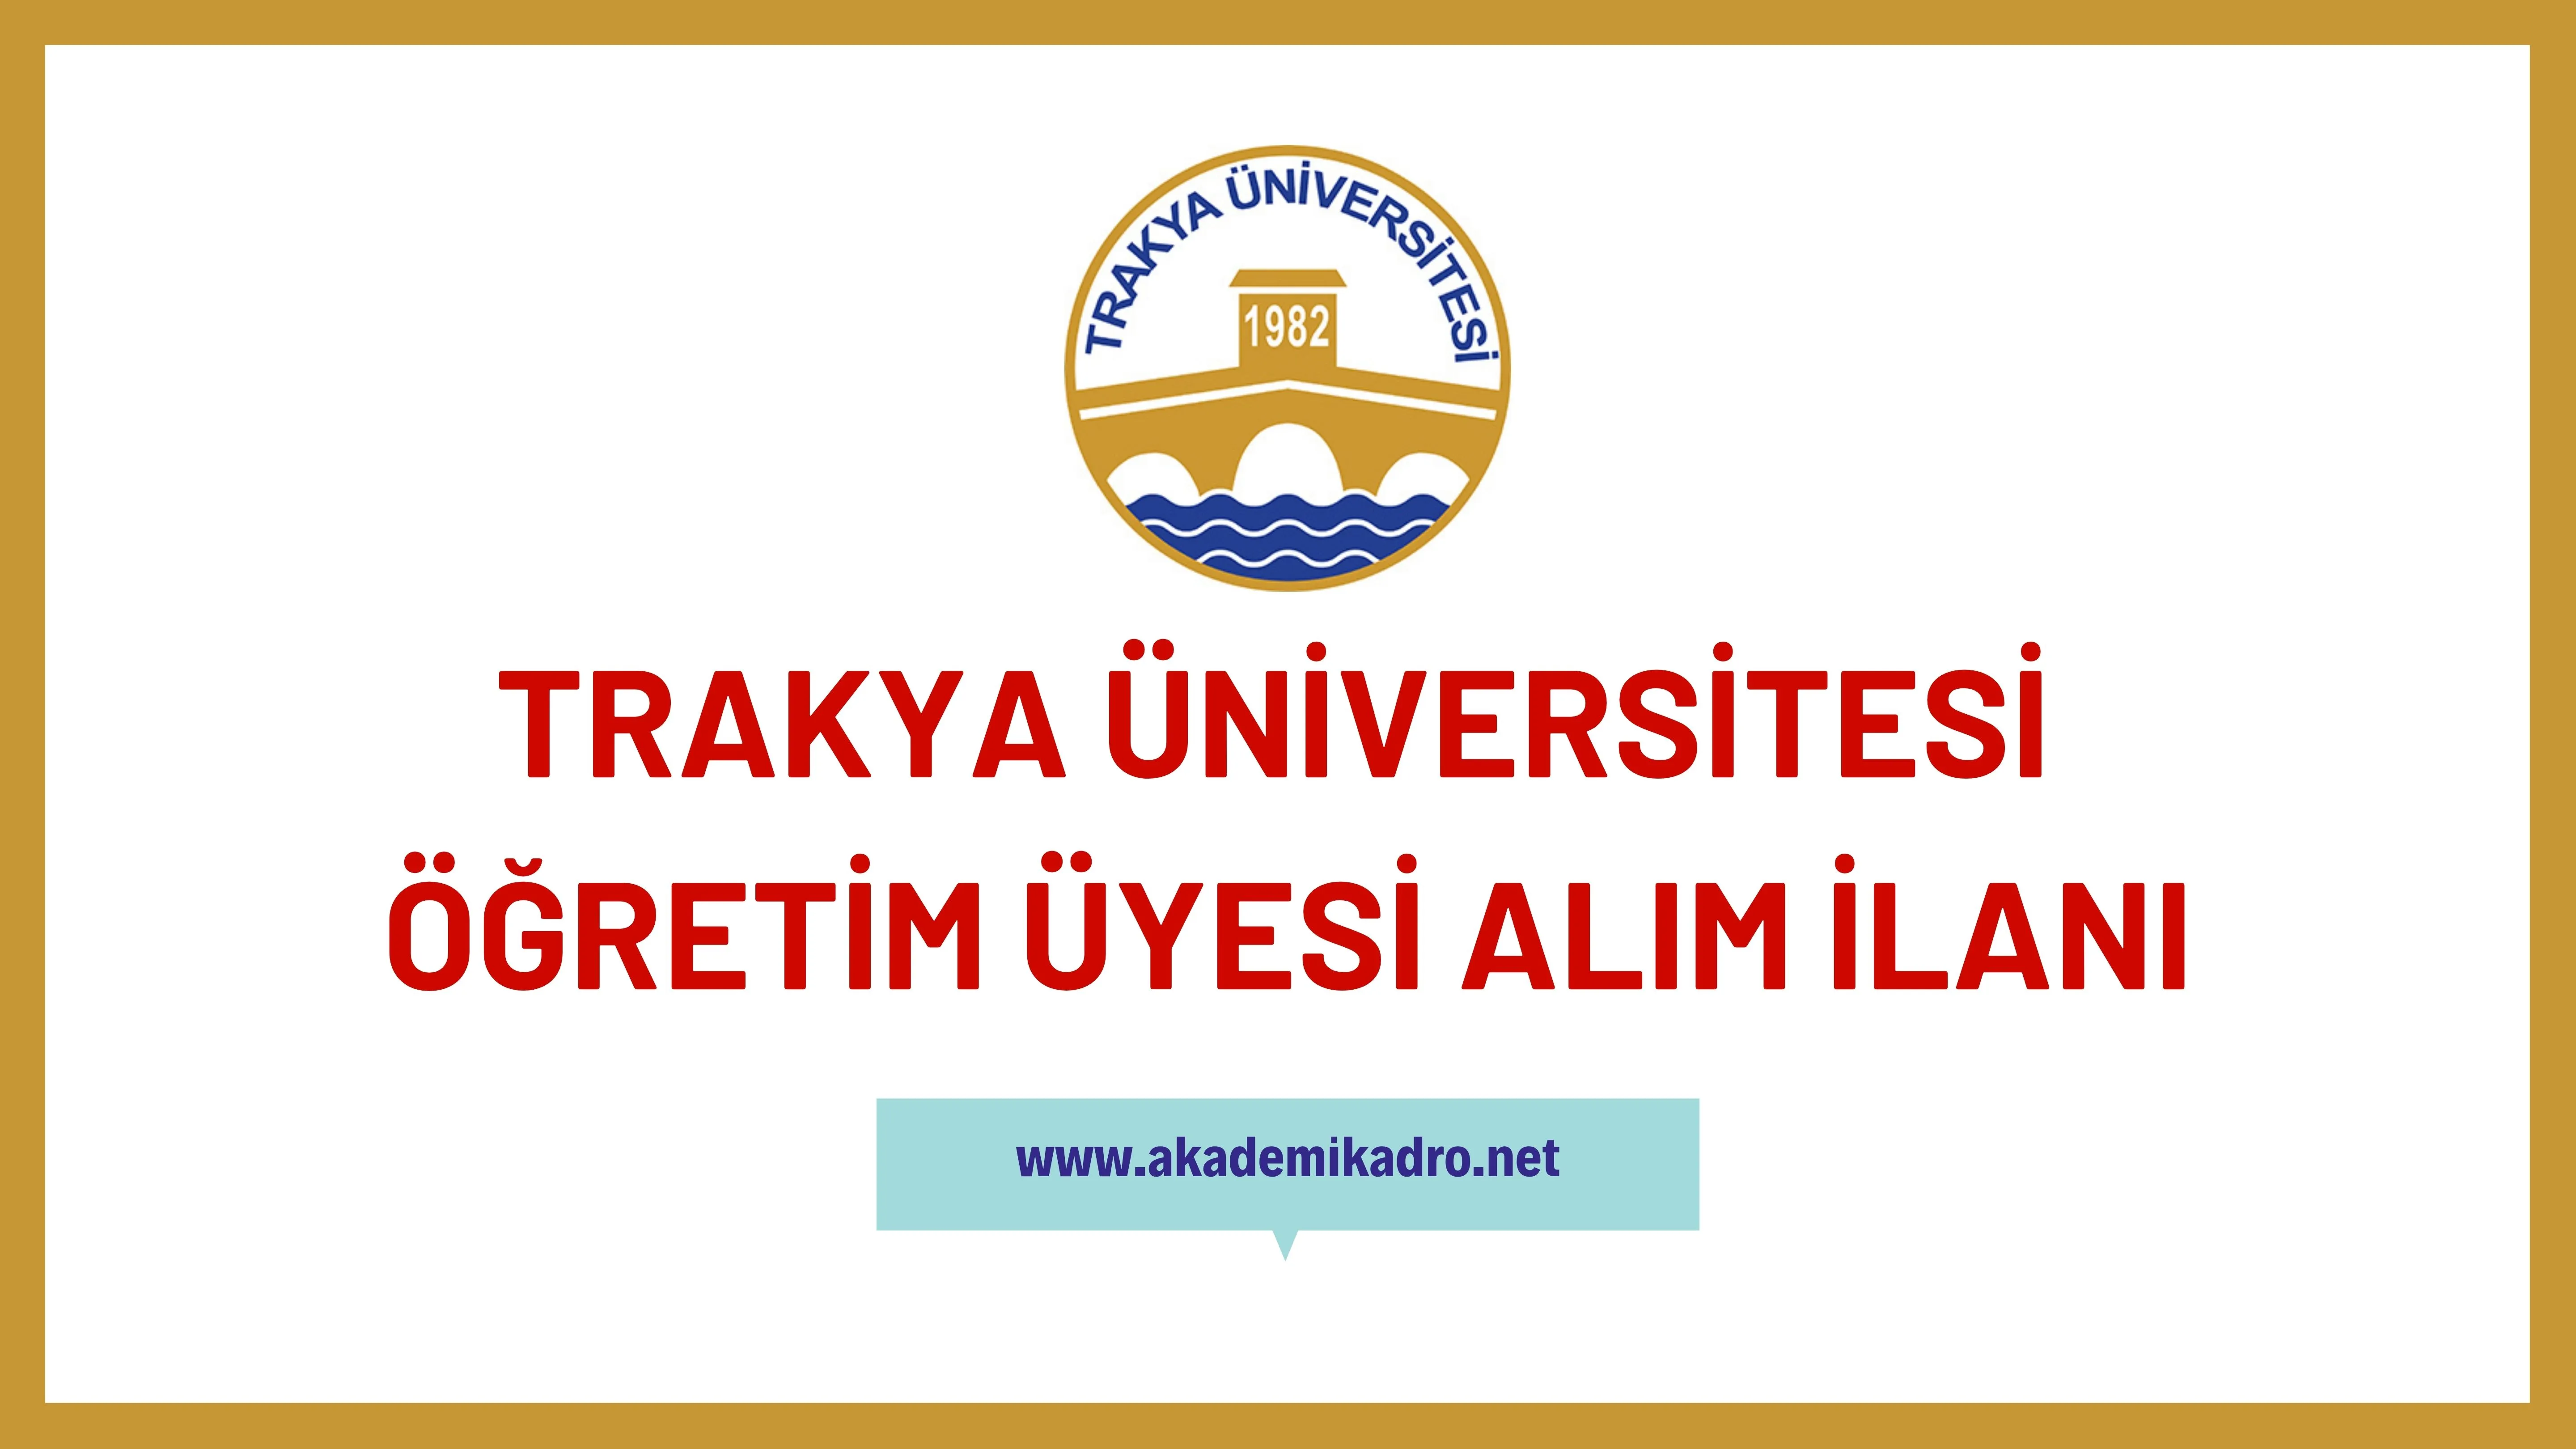 Trakya Üniversitesi birçok alandan 29 öğretim üyesi alacak.